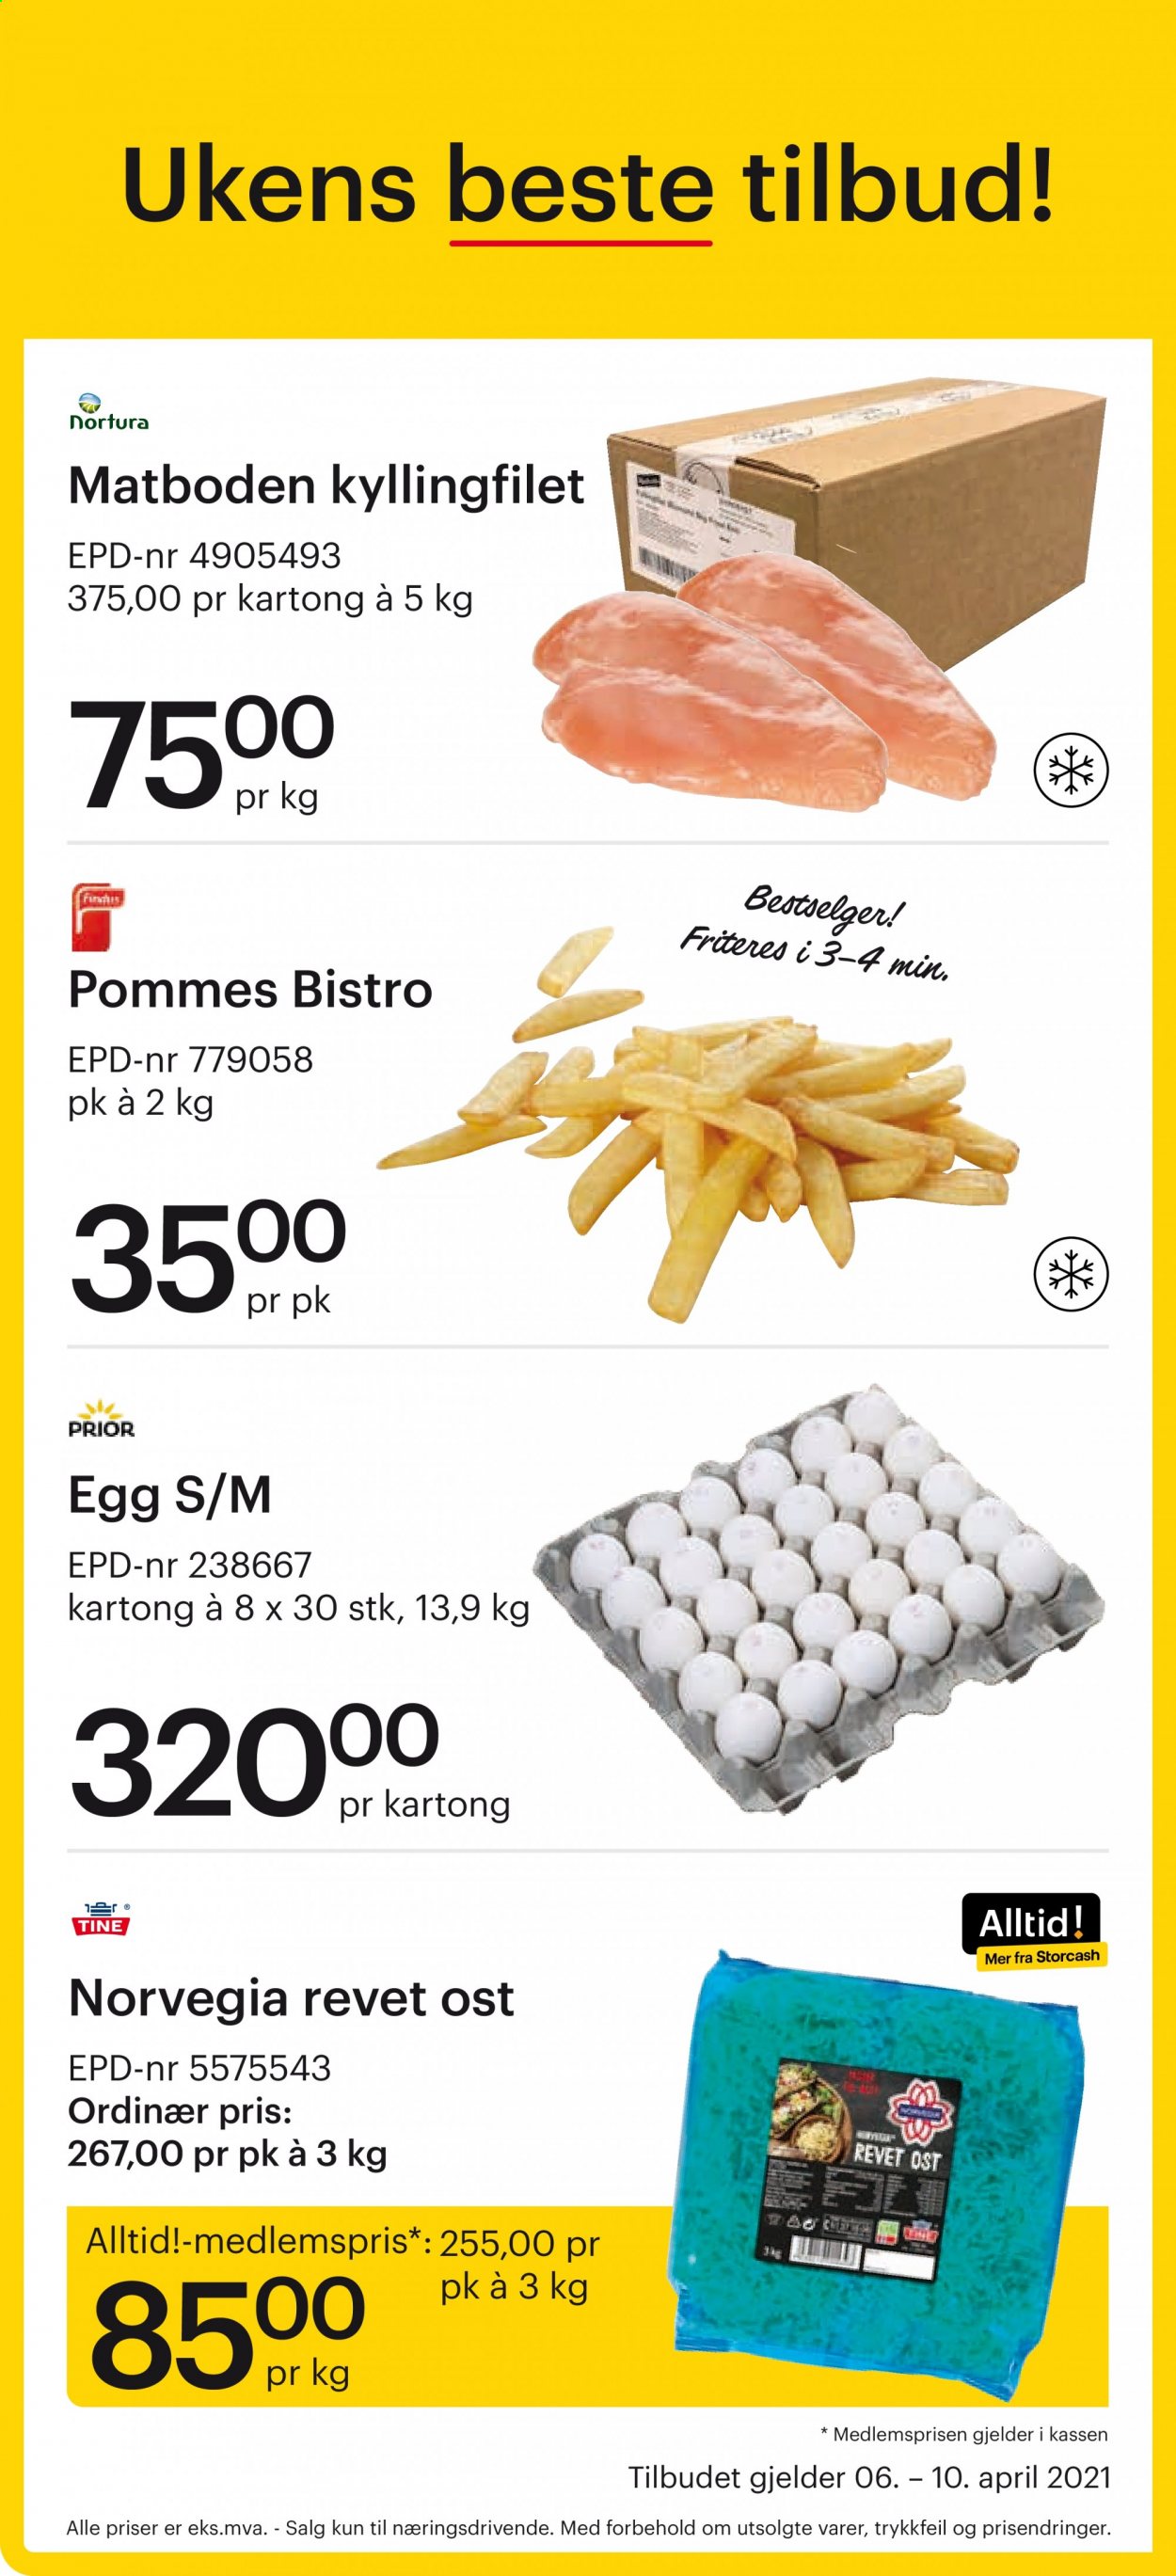 thumbnail - Kundeavis Storcash - 6.4.2021 - 10.4.2021 - Produkter fra tilbudsaviser - kyllingfilet, kyllingkjøtt, Norvegia, ost, egg. Side 1.